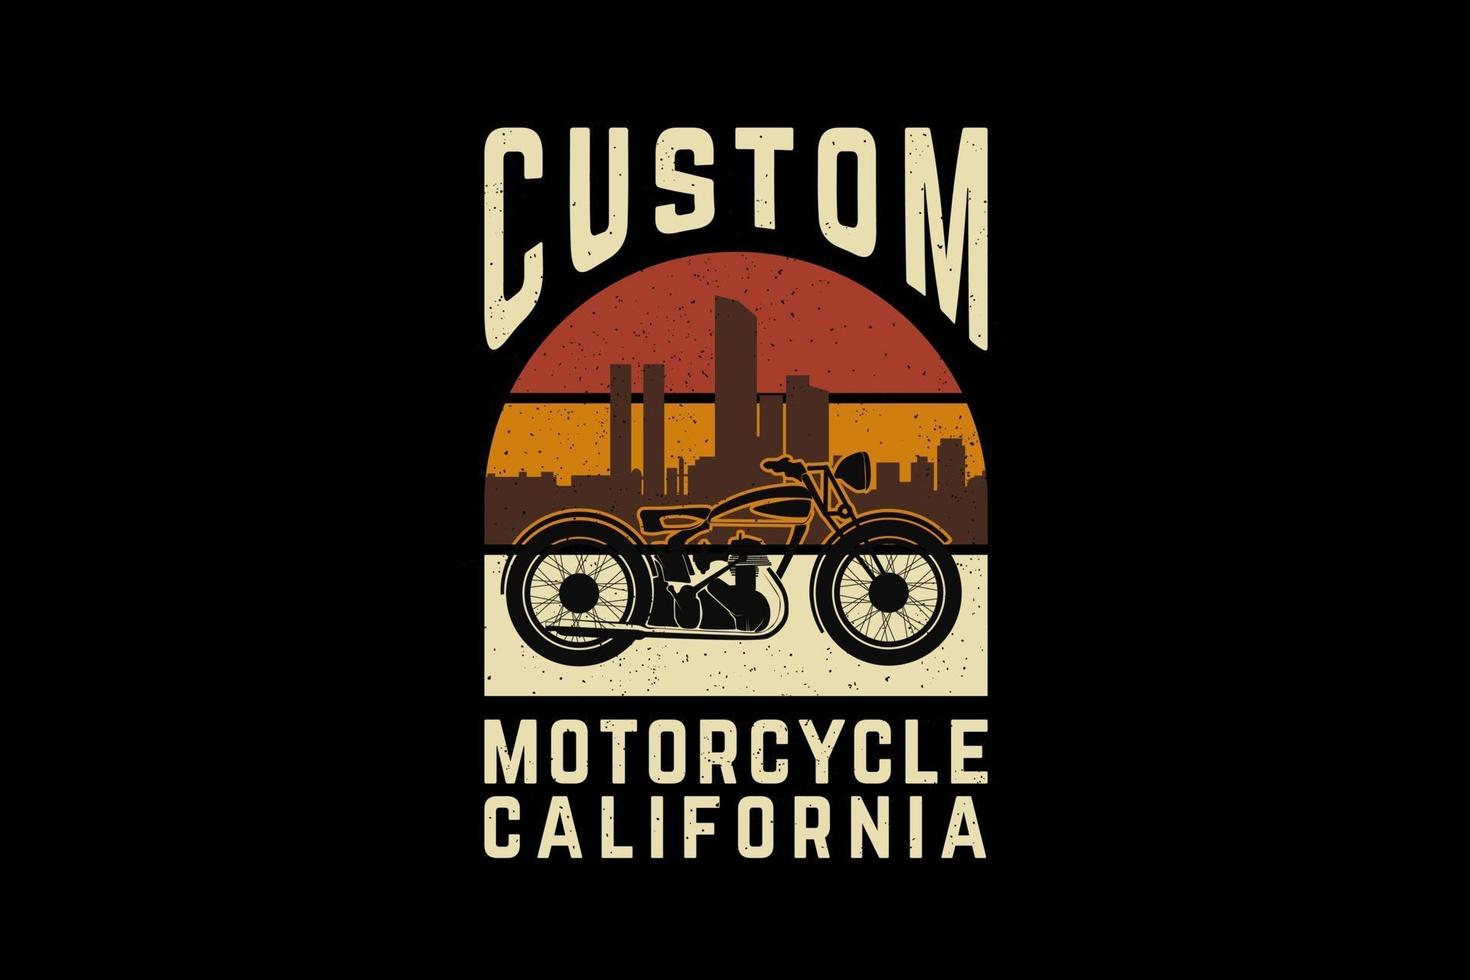 aangepaste motorfiets Californië, ontwerp silhouet retro stijl vector